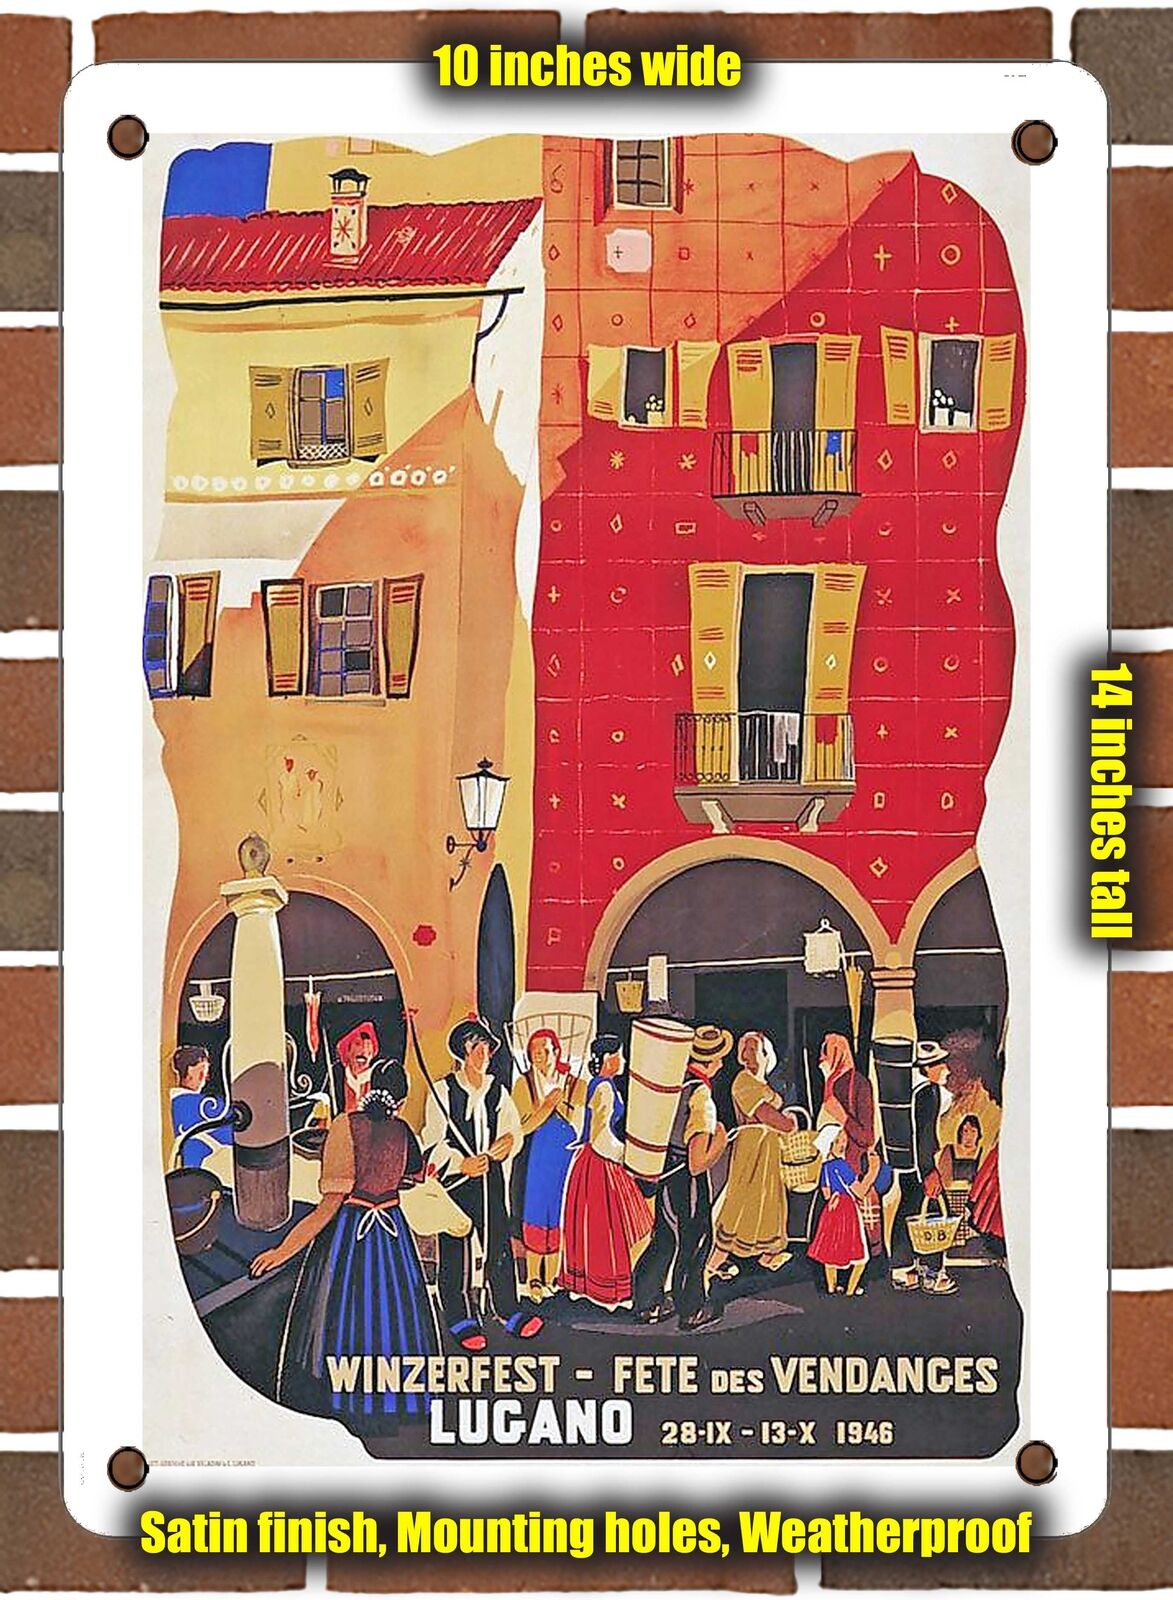 METAL SIGN - 1946 Wine festival, Lugano - 10x14 Inches